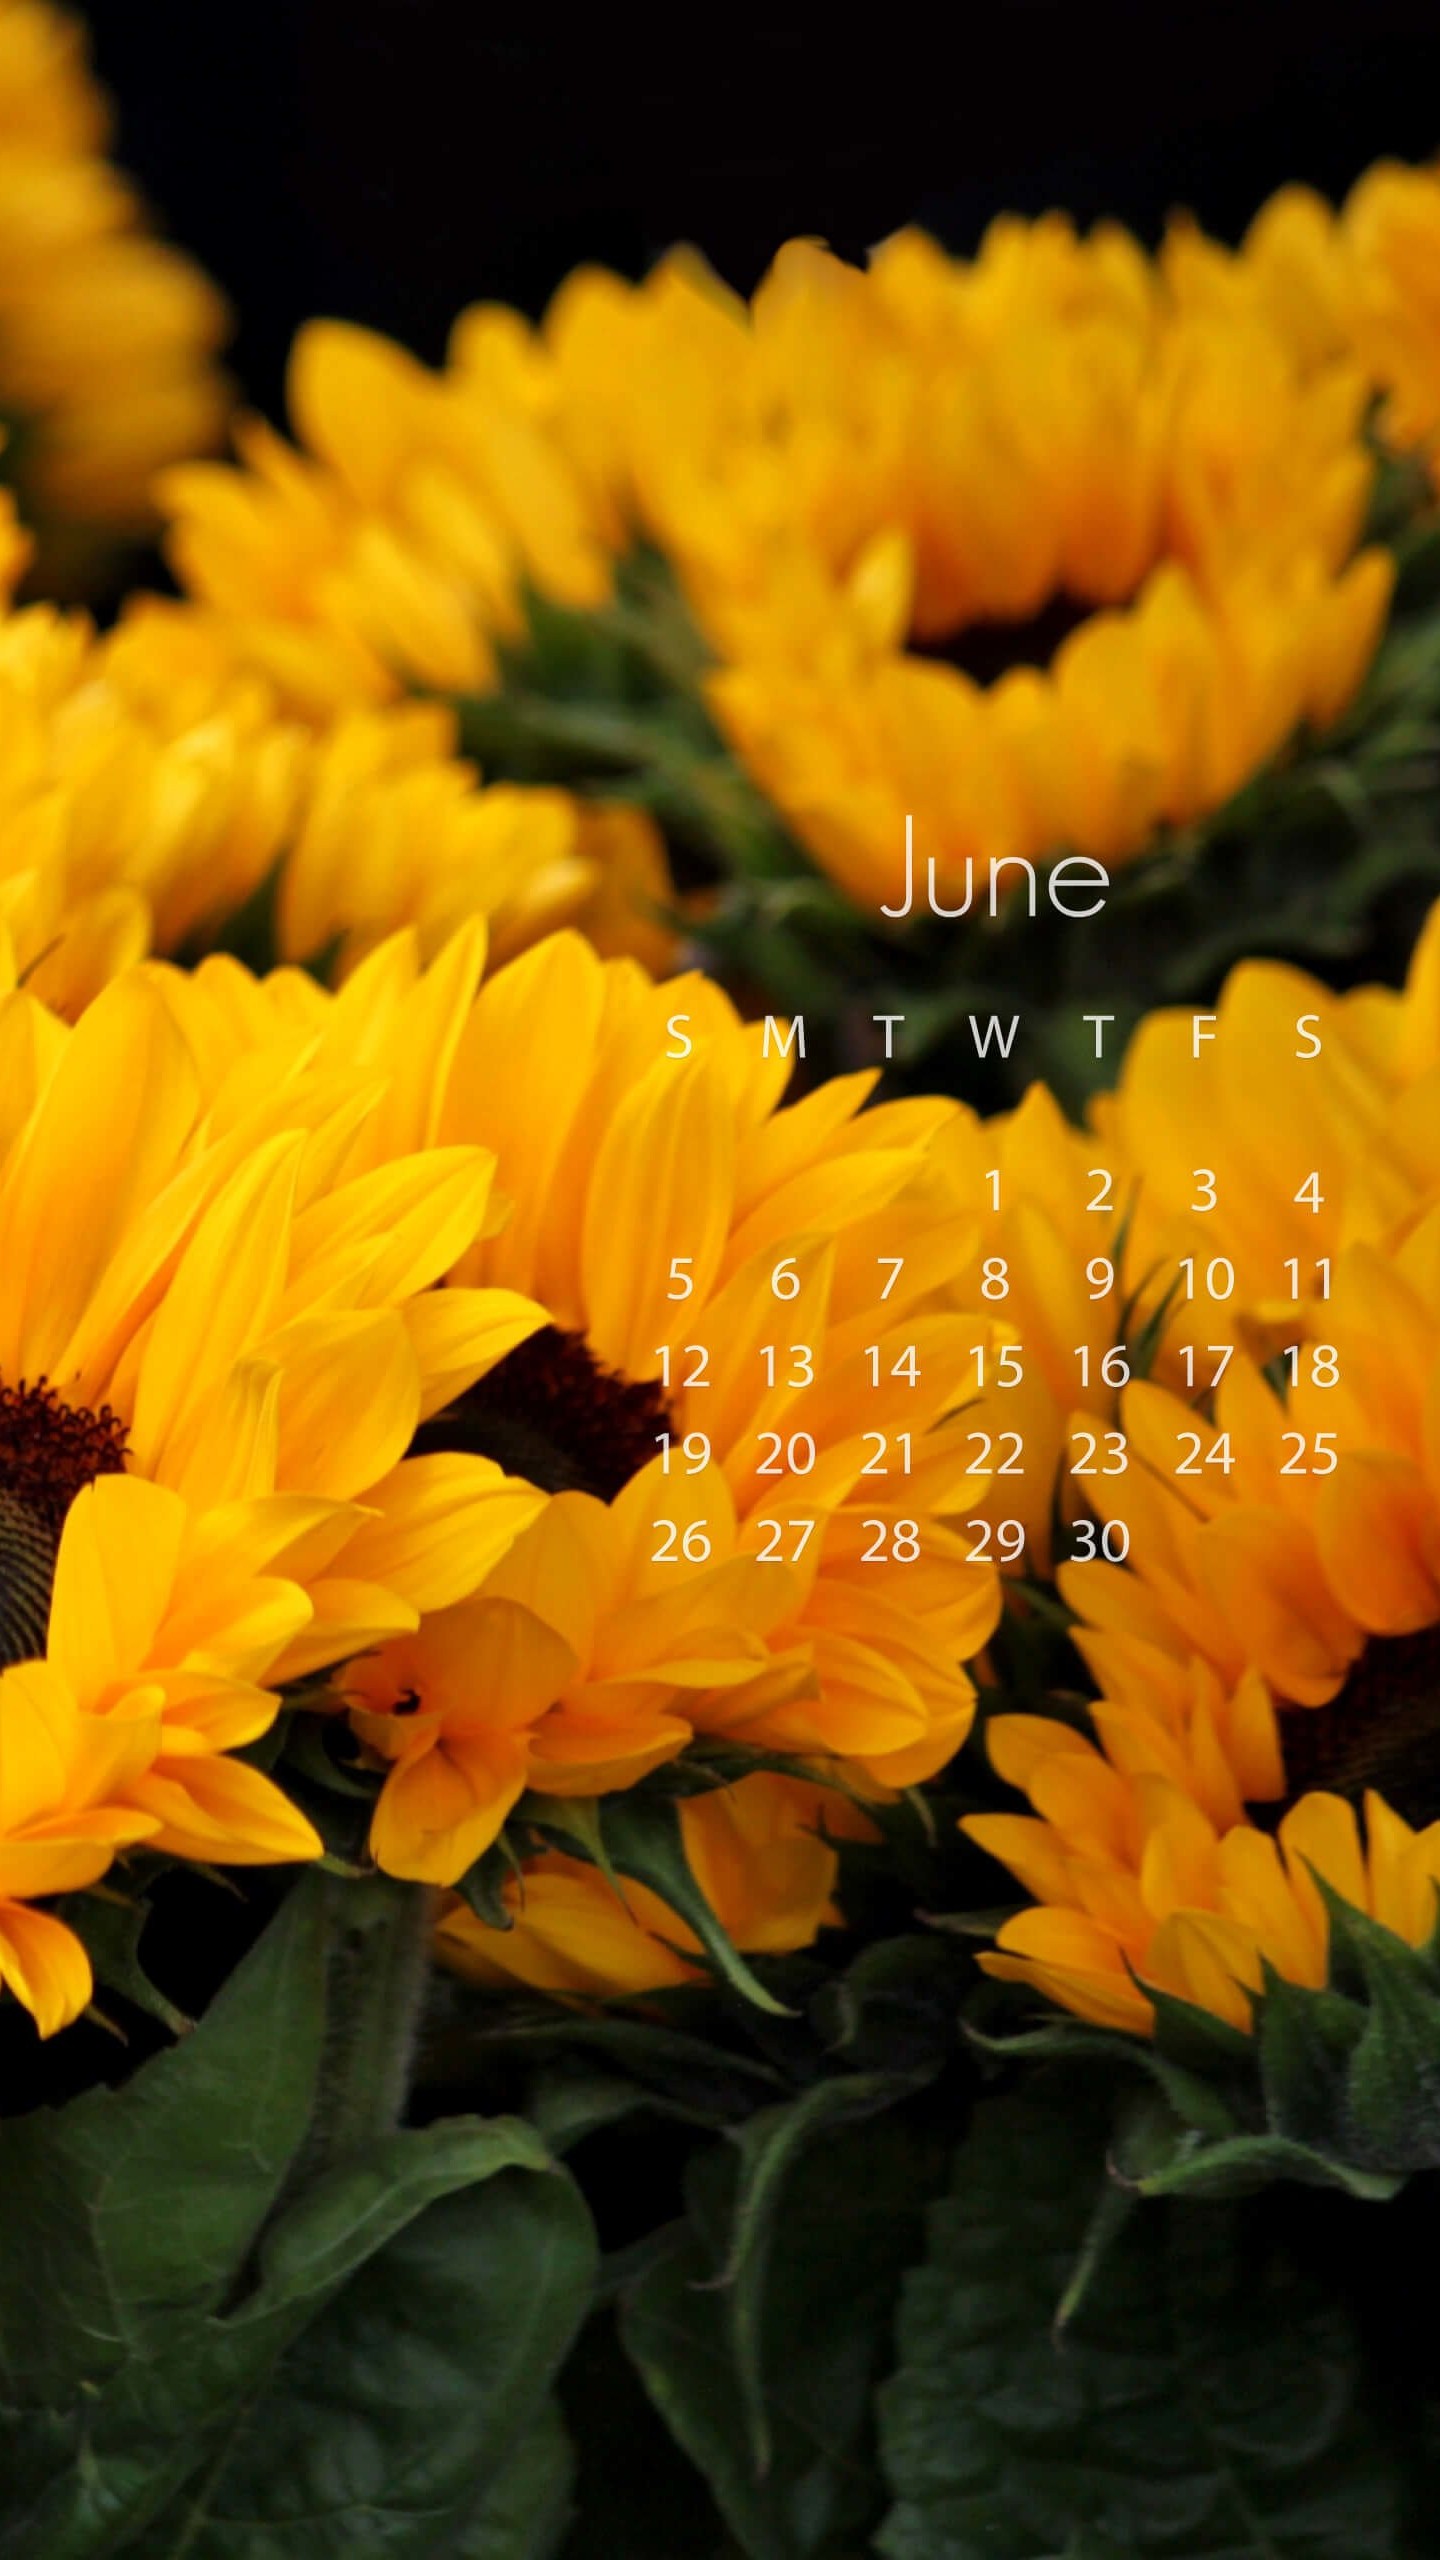 June 2016 Calendar Wallpaper for SAMSUNG Galaxy S6